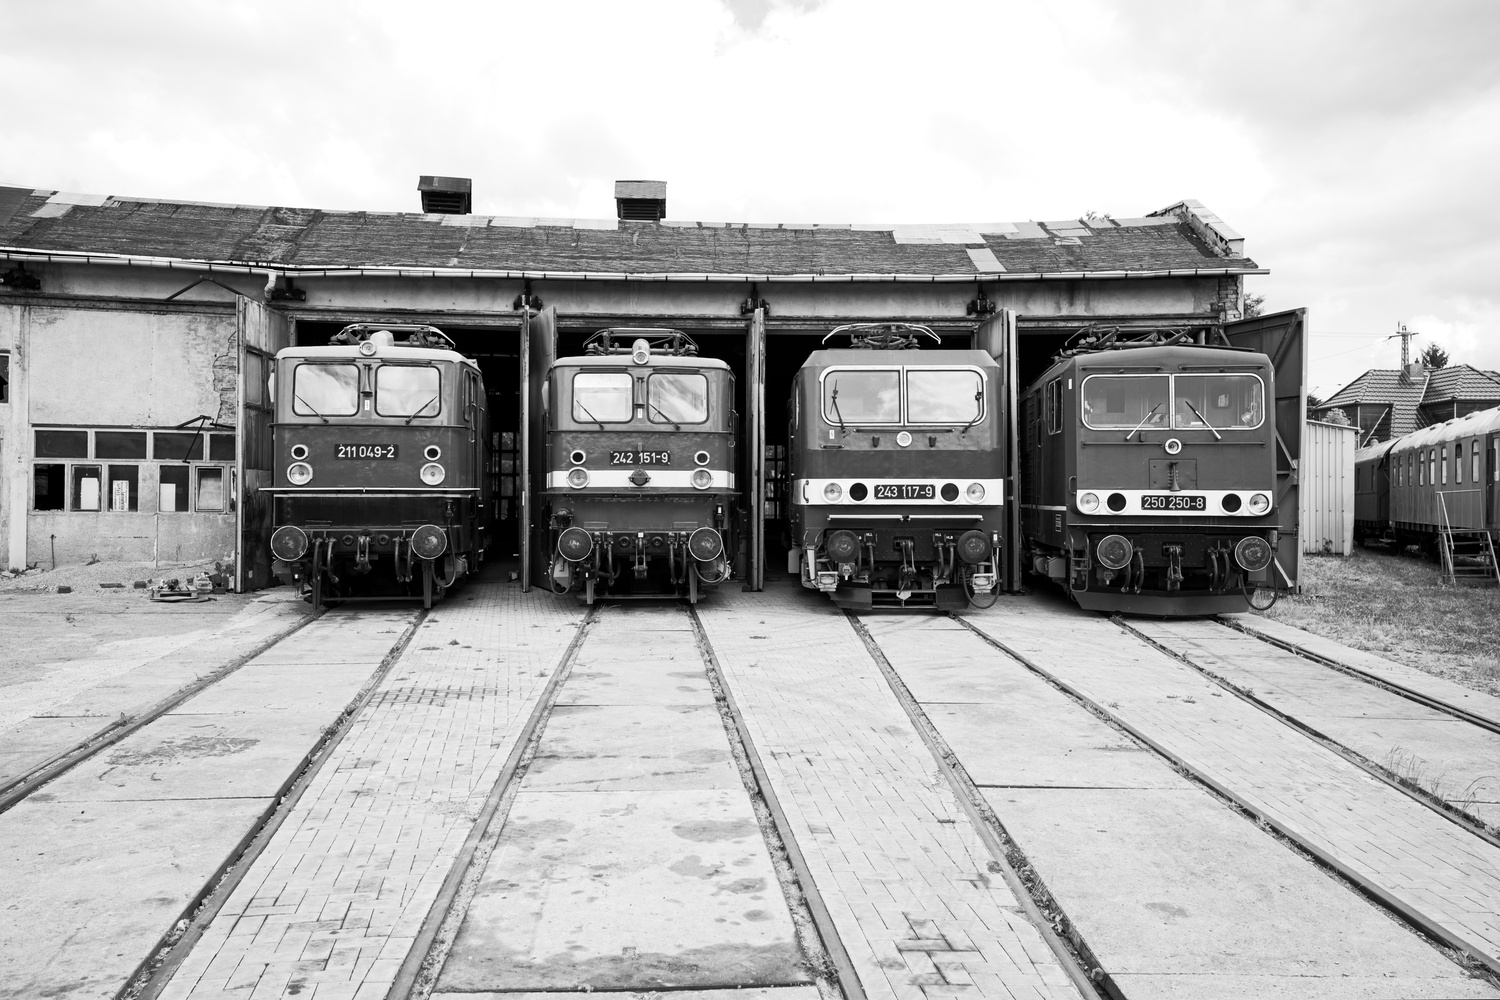 Fast der gesamte technische Fortschritt im E-Lokbau über die Bestehenszeit der DDR in einem Bild: Die Baureihen 211 049-2, 242 151-9, 243 117-9 und 250 250-8.